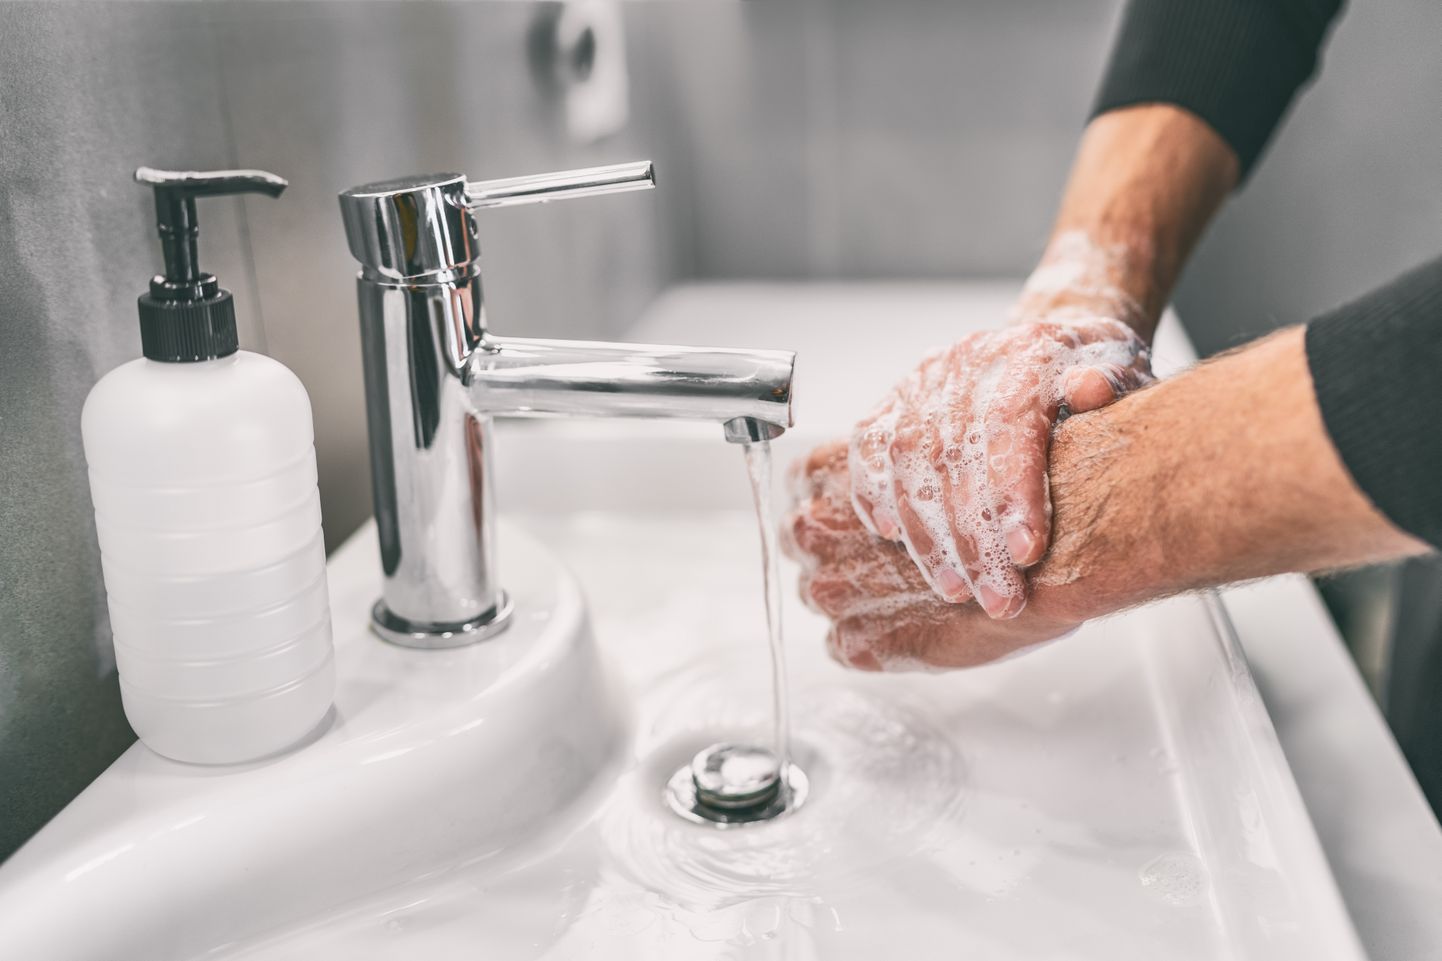 Мытье рук. Иллюстративное фото